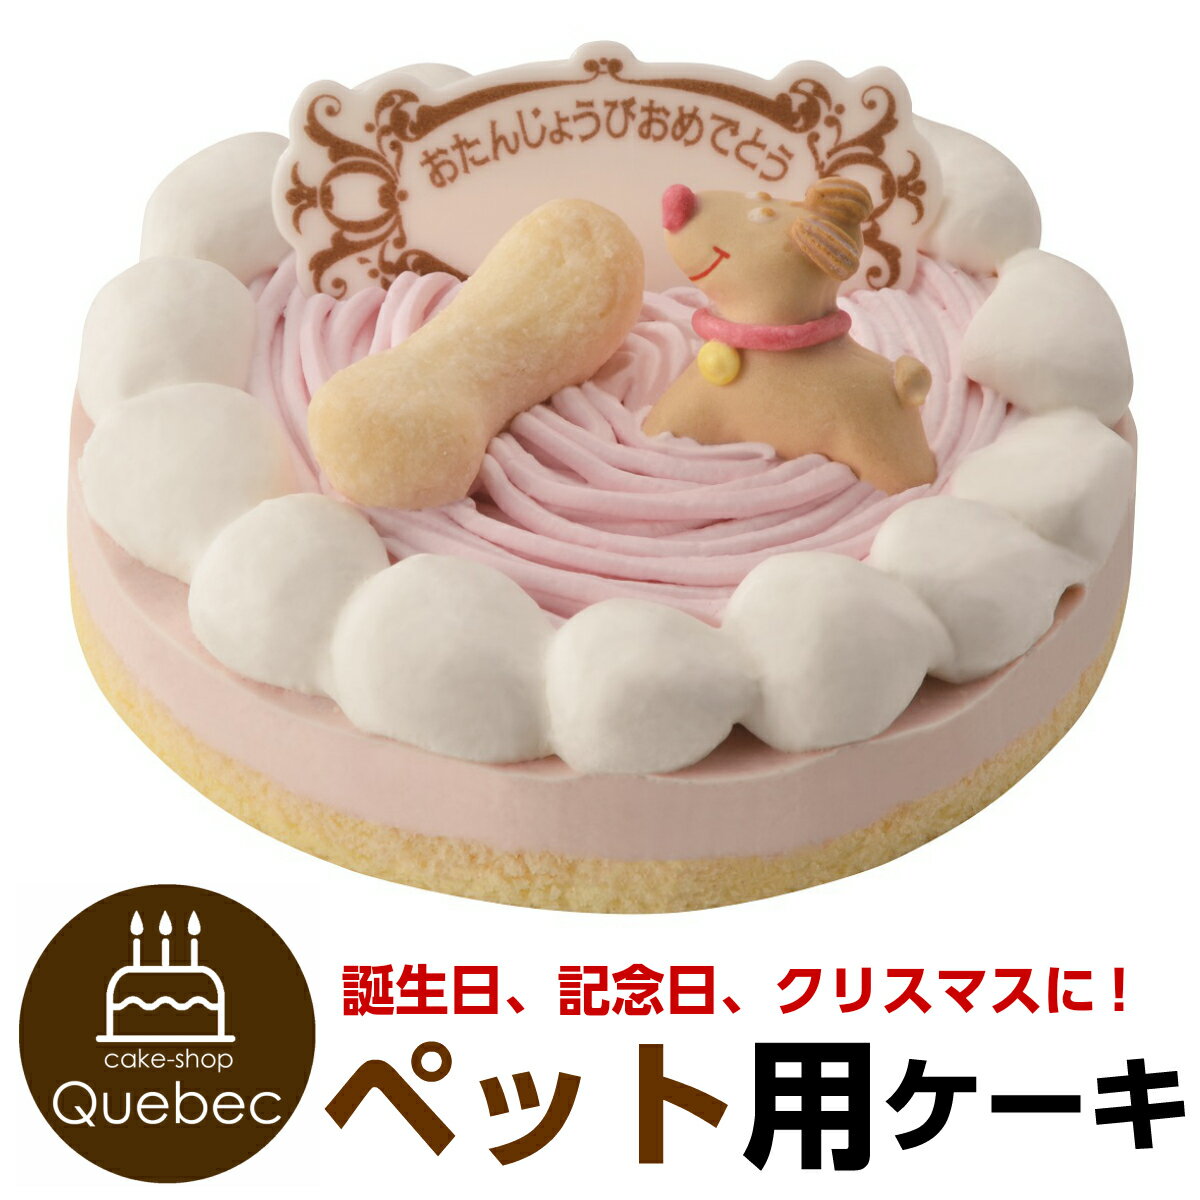 ペットケーキ 誕生日ケーキ ストロベリー 記念日ケーキ 犬猫兼用 ペット用ケーキ　PartnerFoods